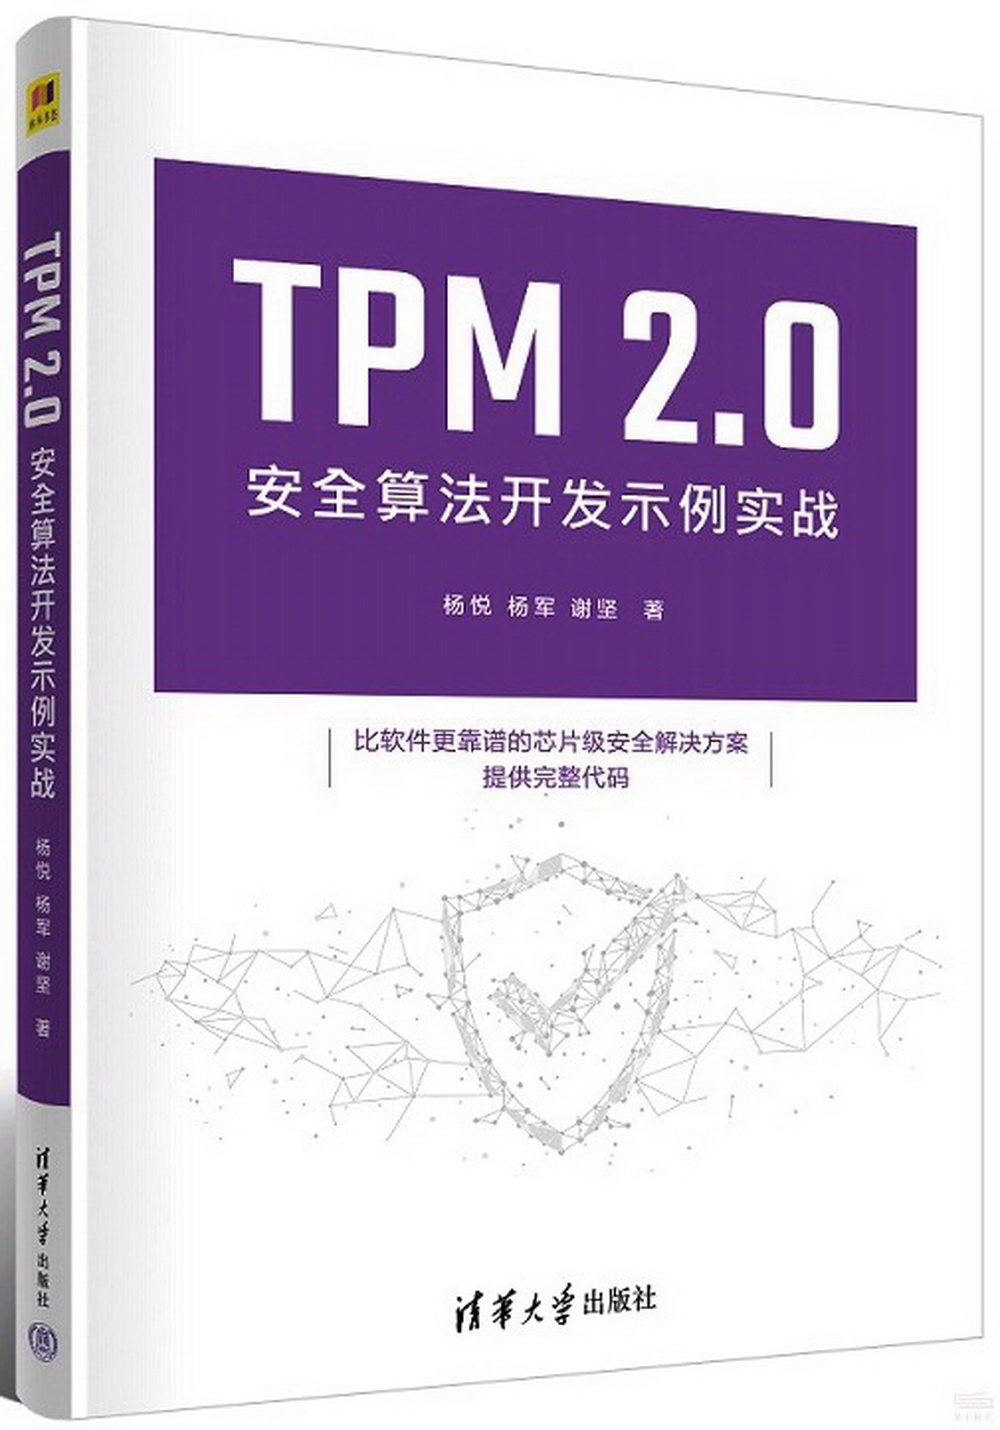 TPM 2.0安全算法開發示例實戰